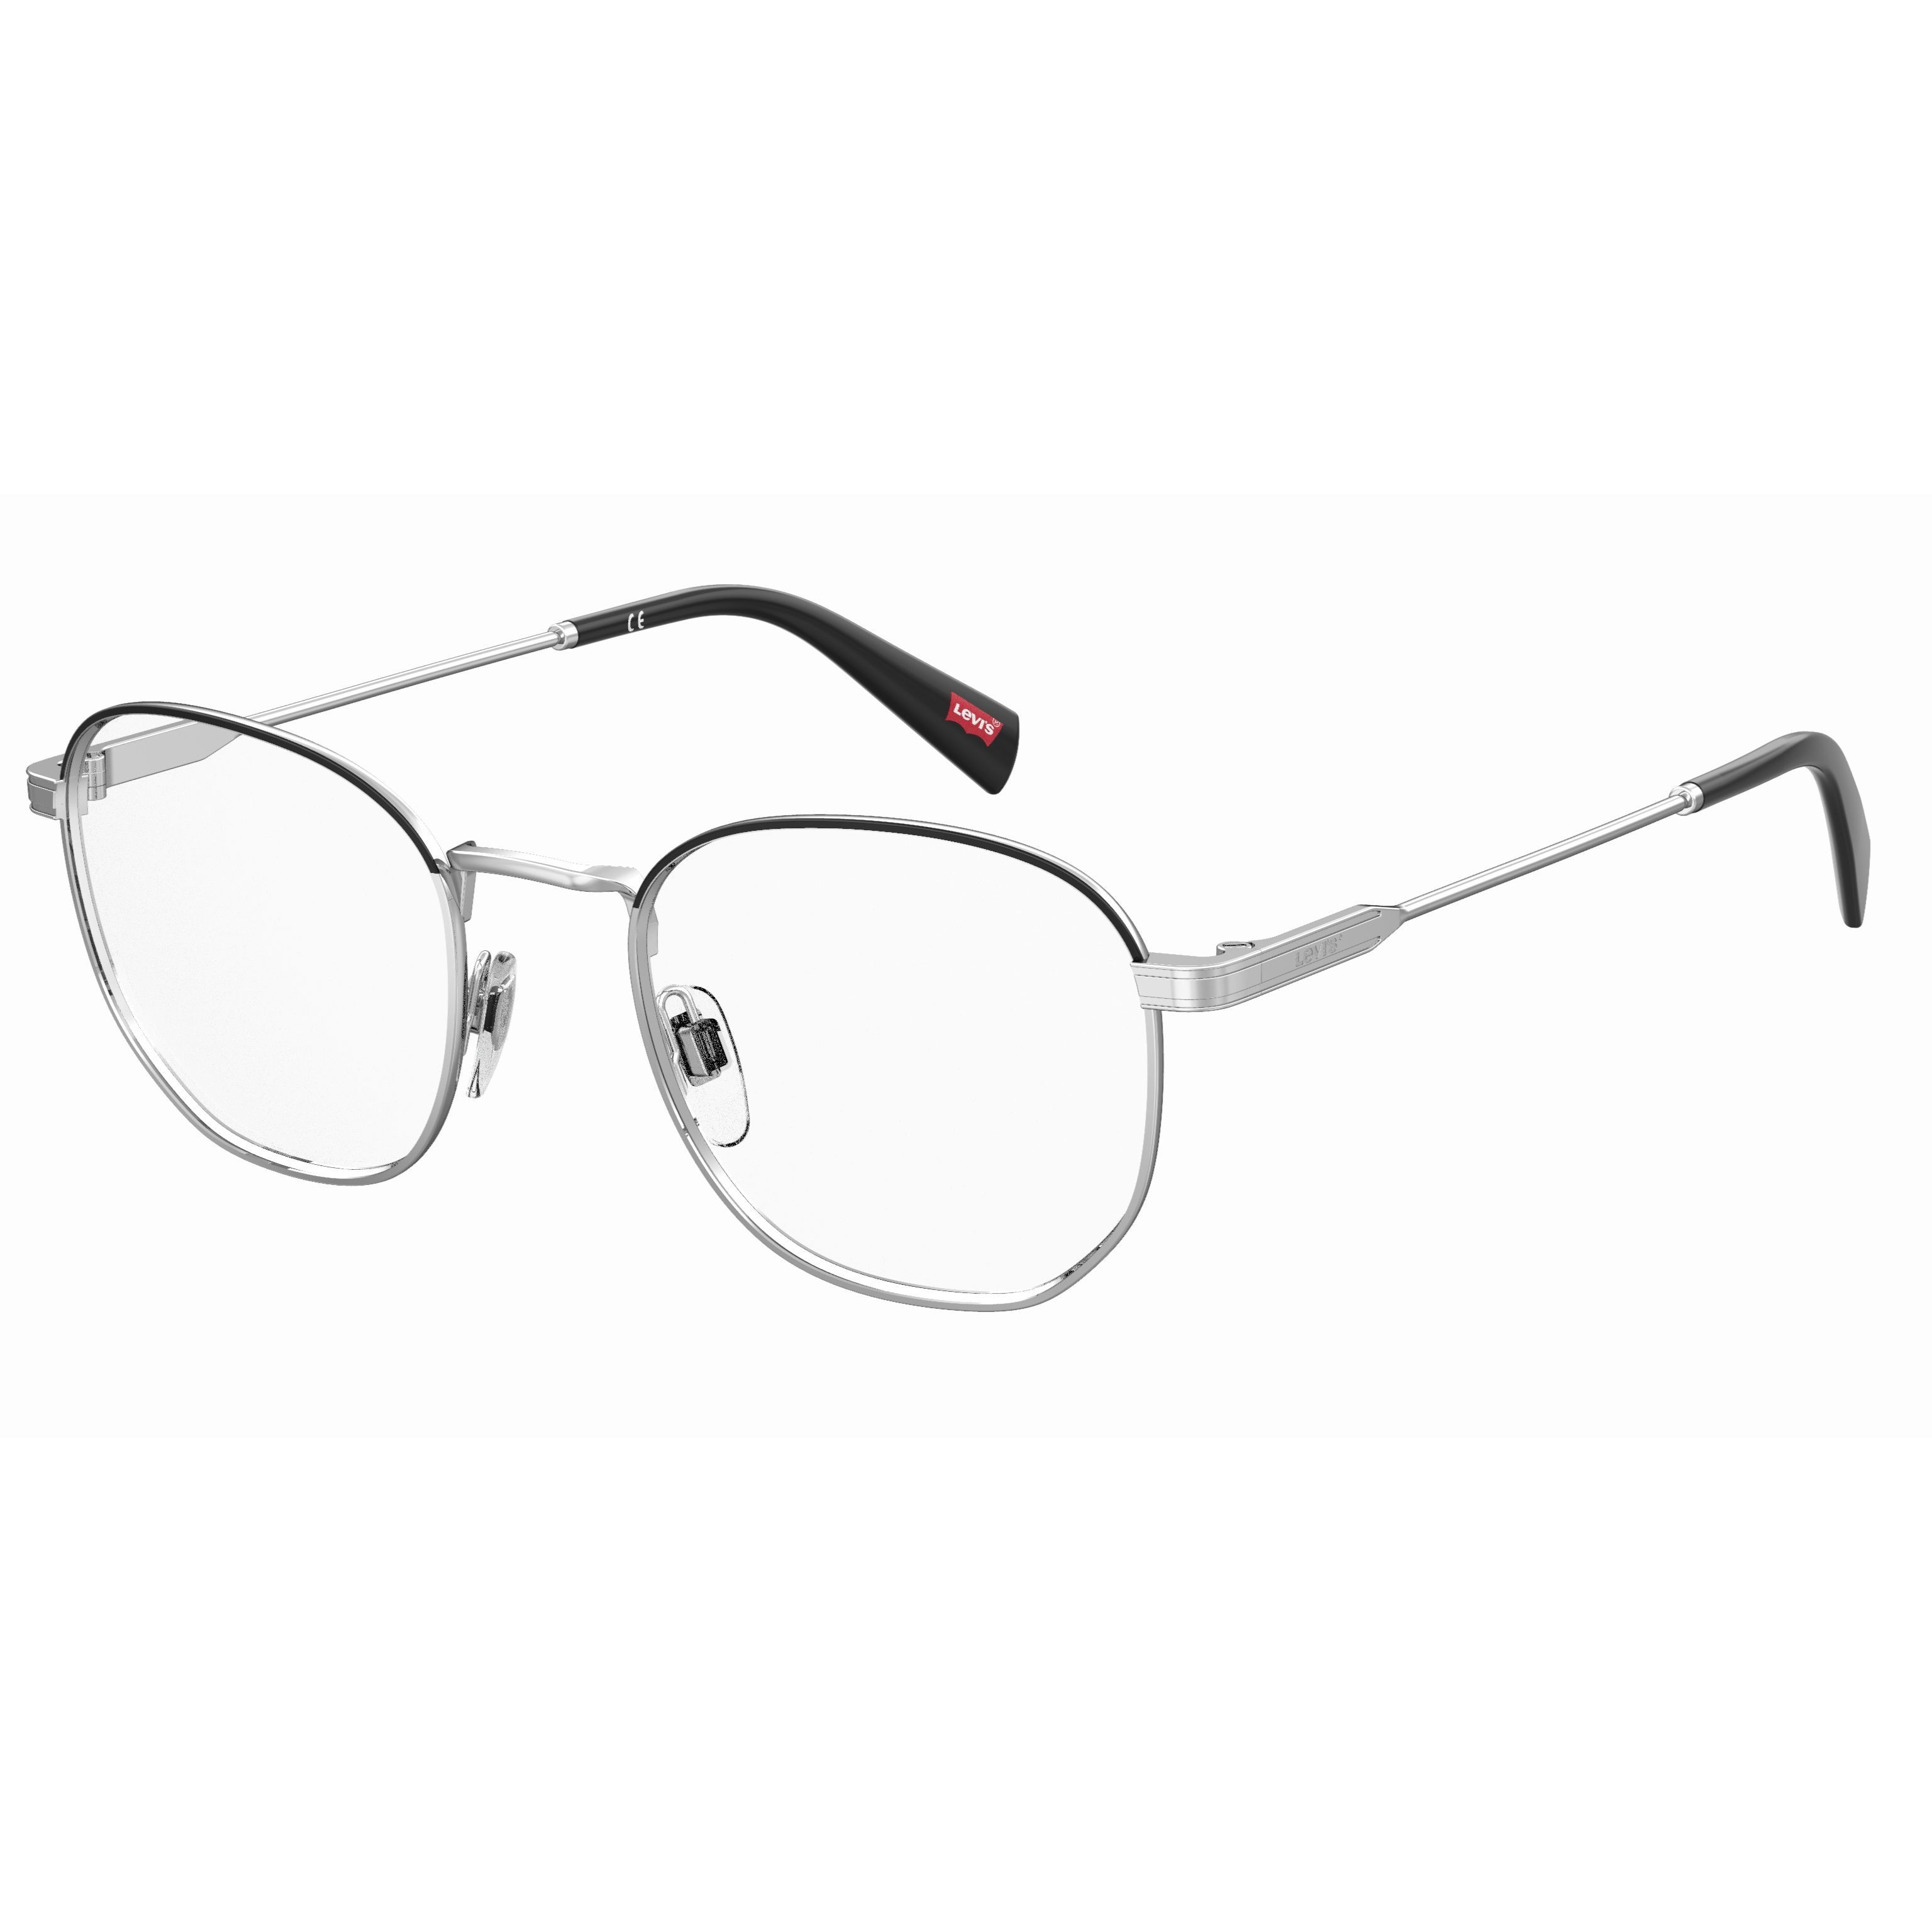 LV 1028 Round Eyeglasses 010 - size 50